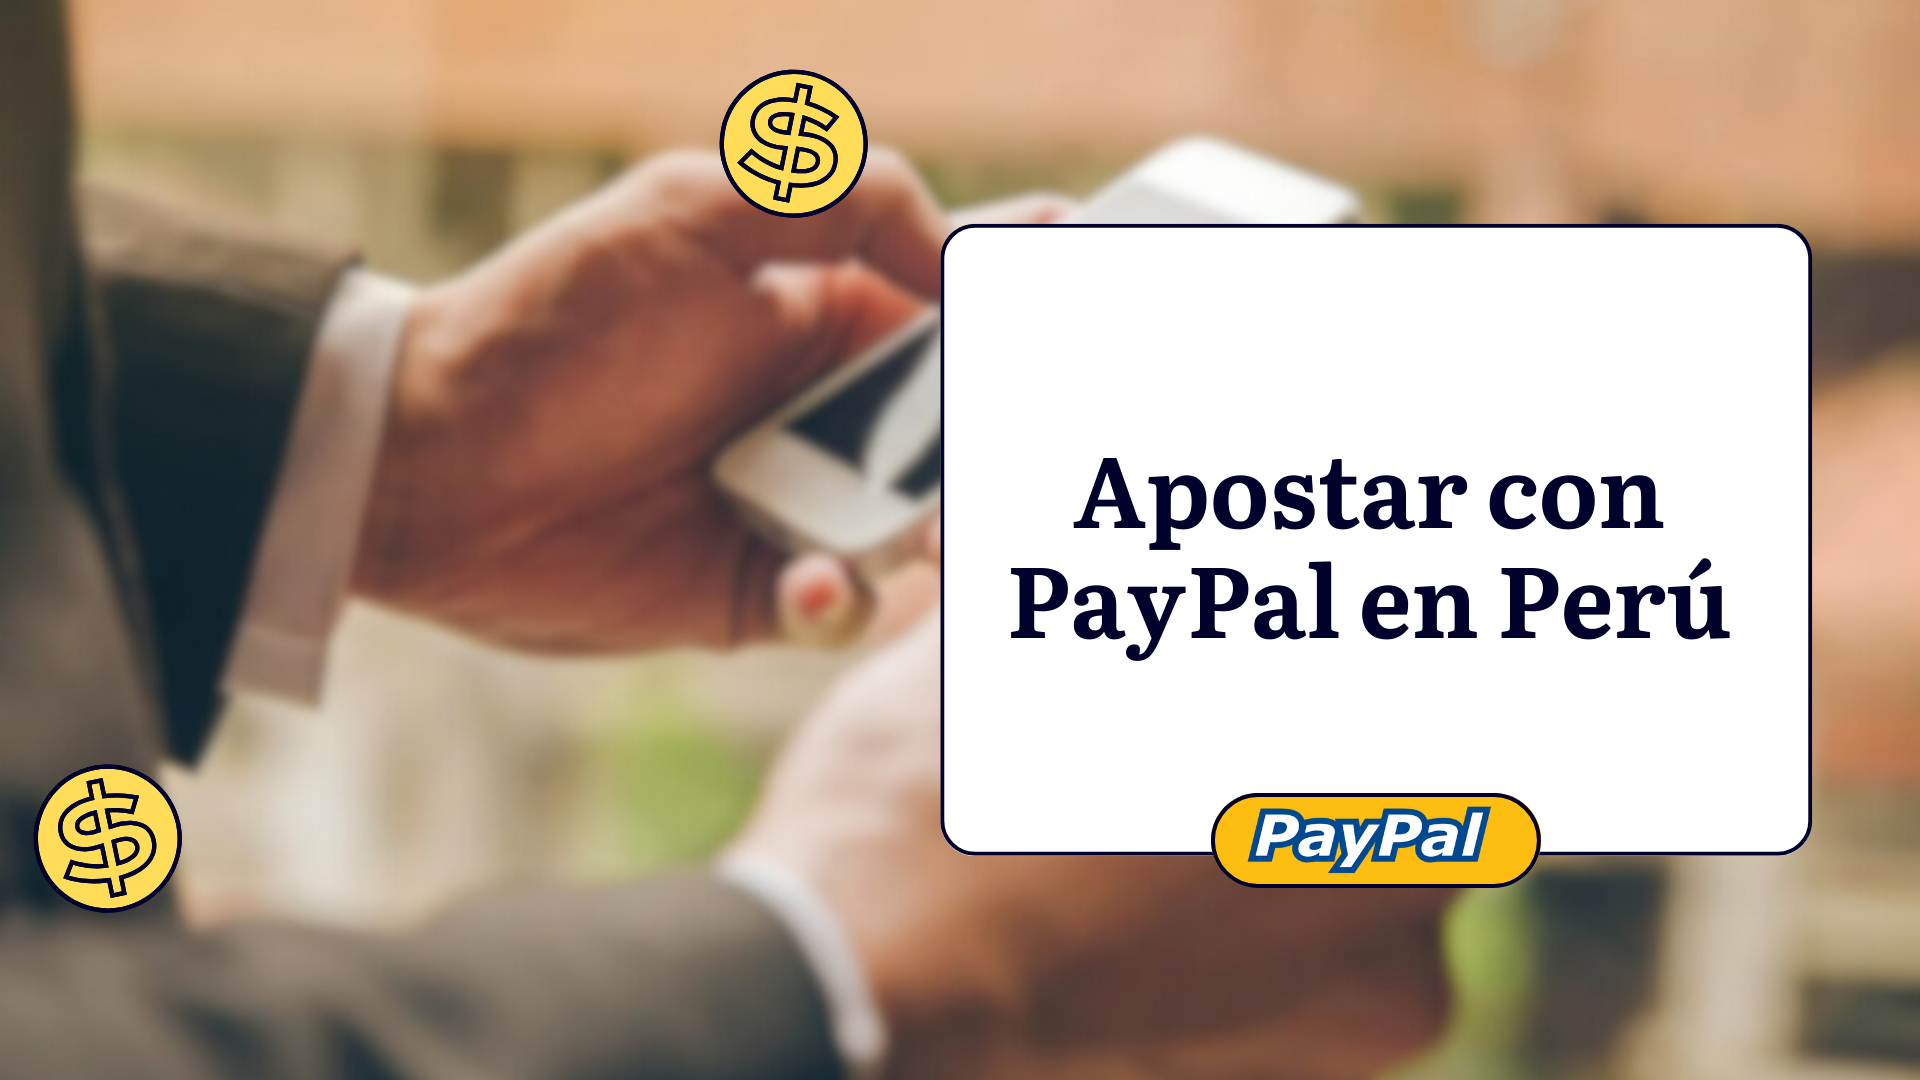 Apostar con PayPal en Perú